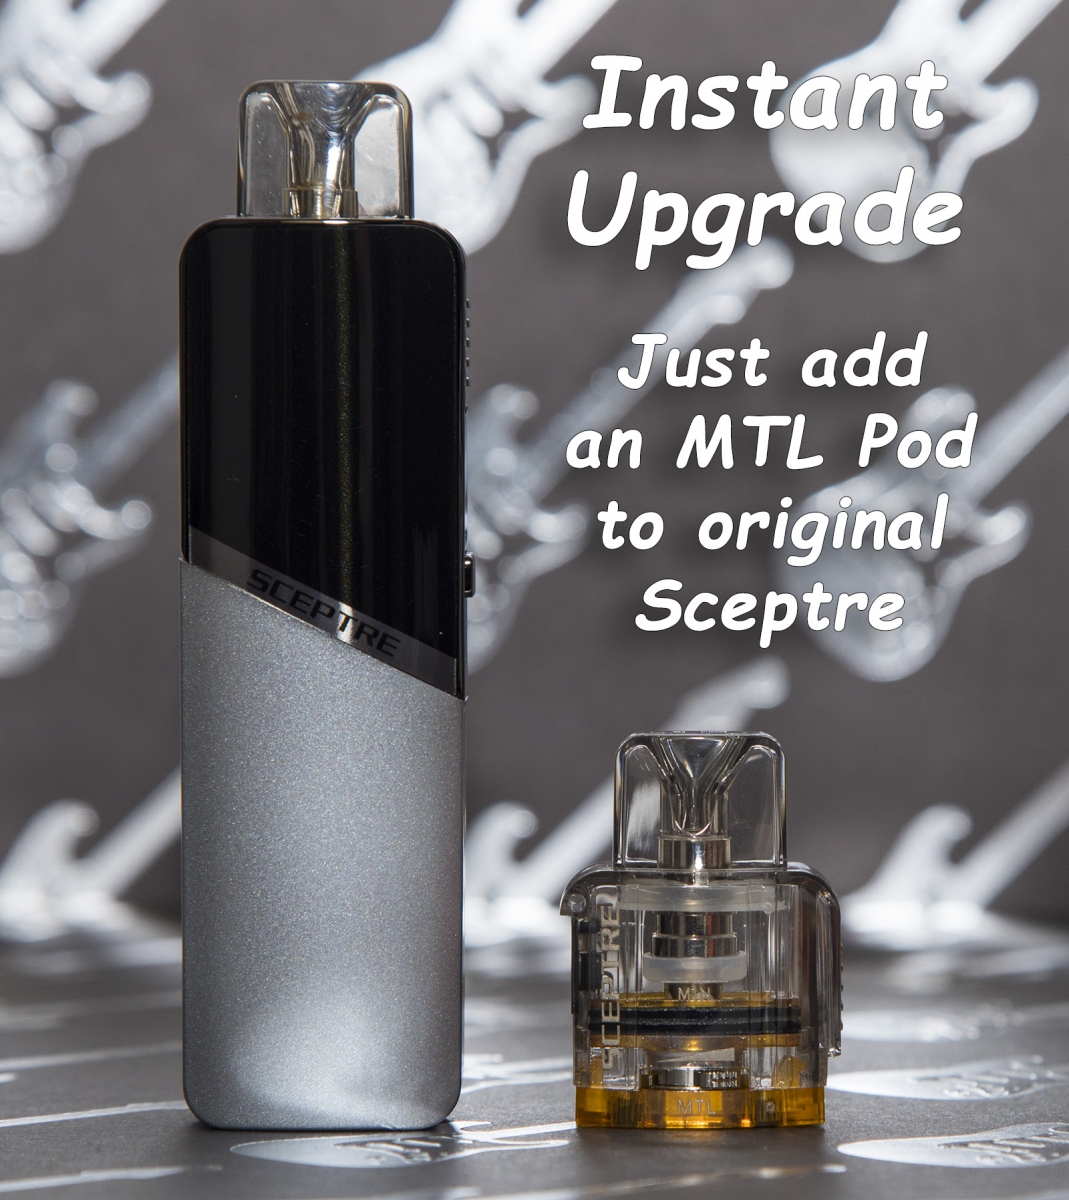 Innokin Sceptre MTL Edition instant upgrade